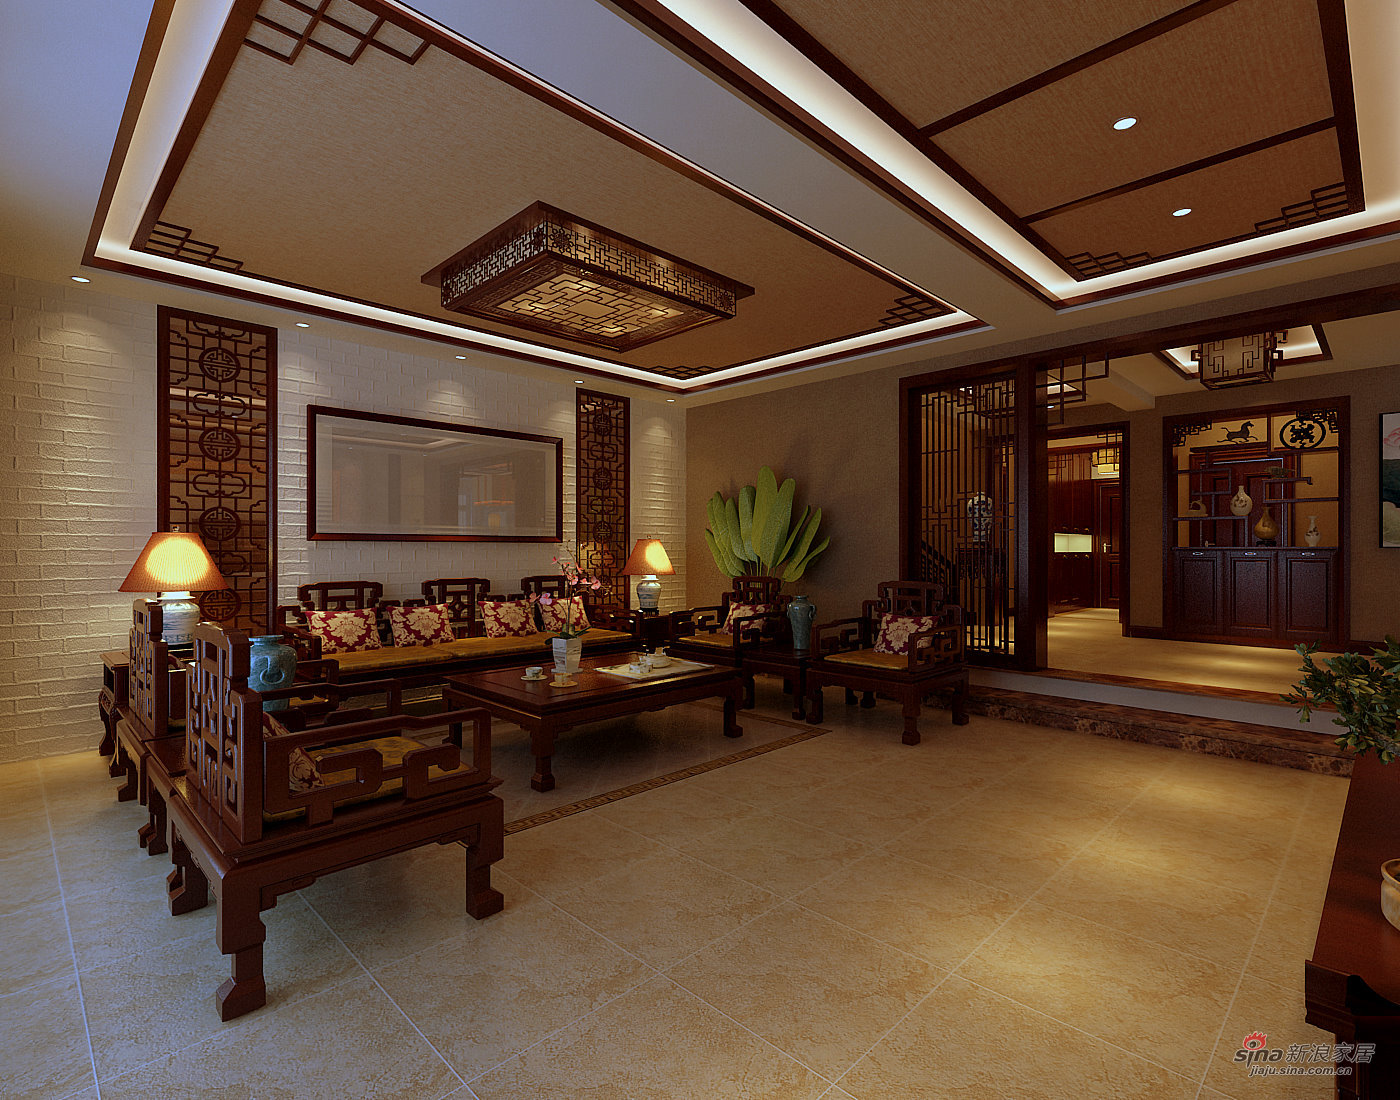 中式 别墅 客厅图片来自用户1907658205在【高清】古典中式惬意的奢华美43的分享